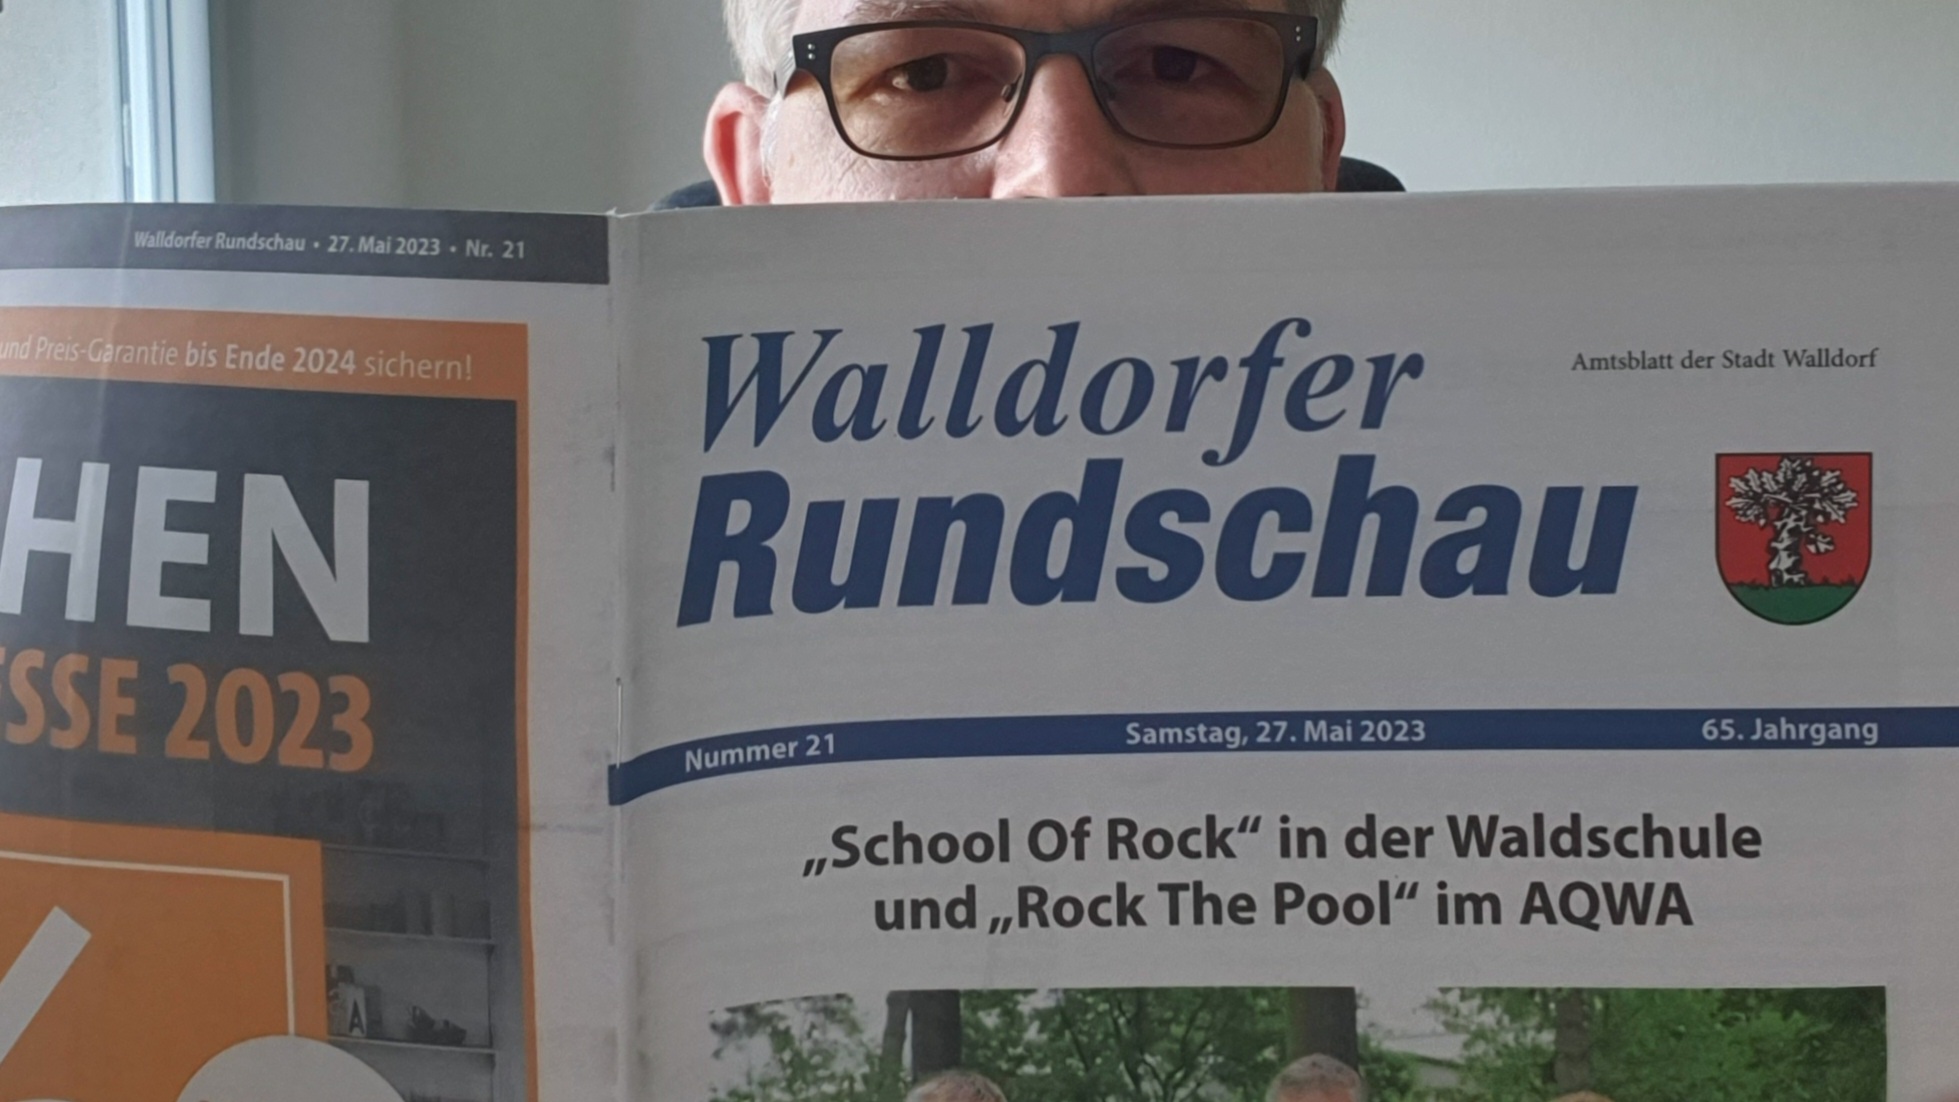 Die Walldorfer Rundschau 2023 Nr. 21 | Foto: Dr. Clemens Kriesel